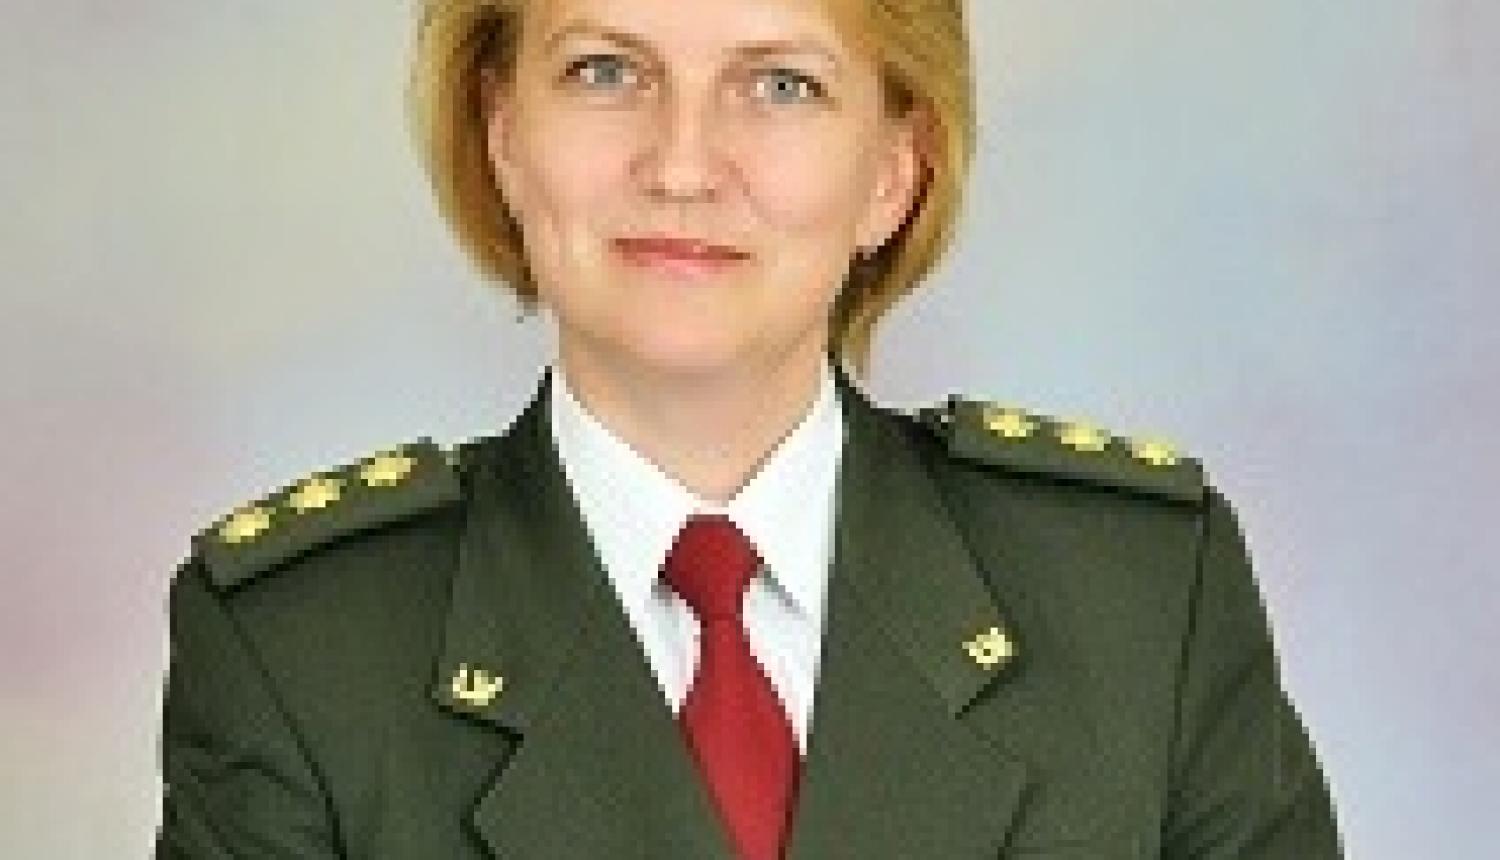 MK atbalsta ģenerāļa pakāpes kā apbalvojuma piešķiršanu IeVP priekšniecei Ilonai Spurei